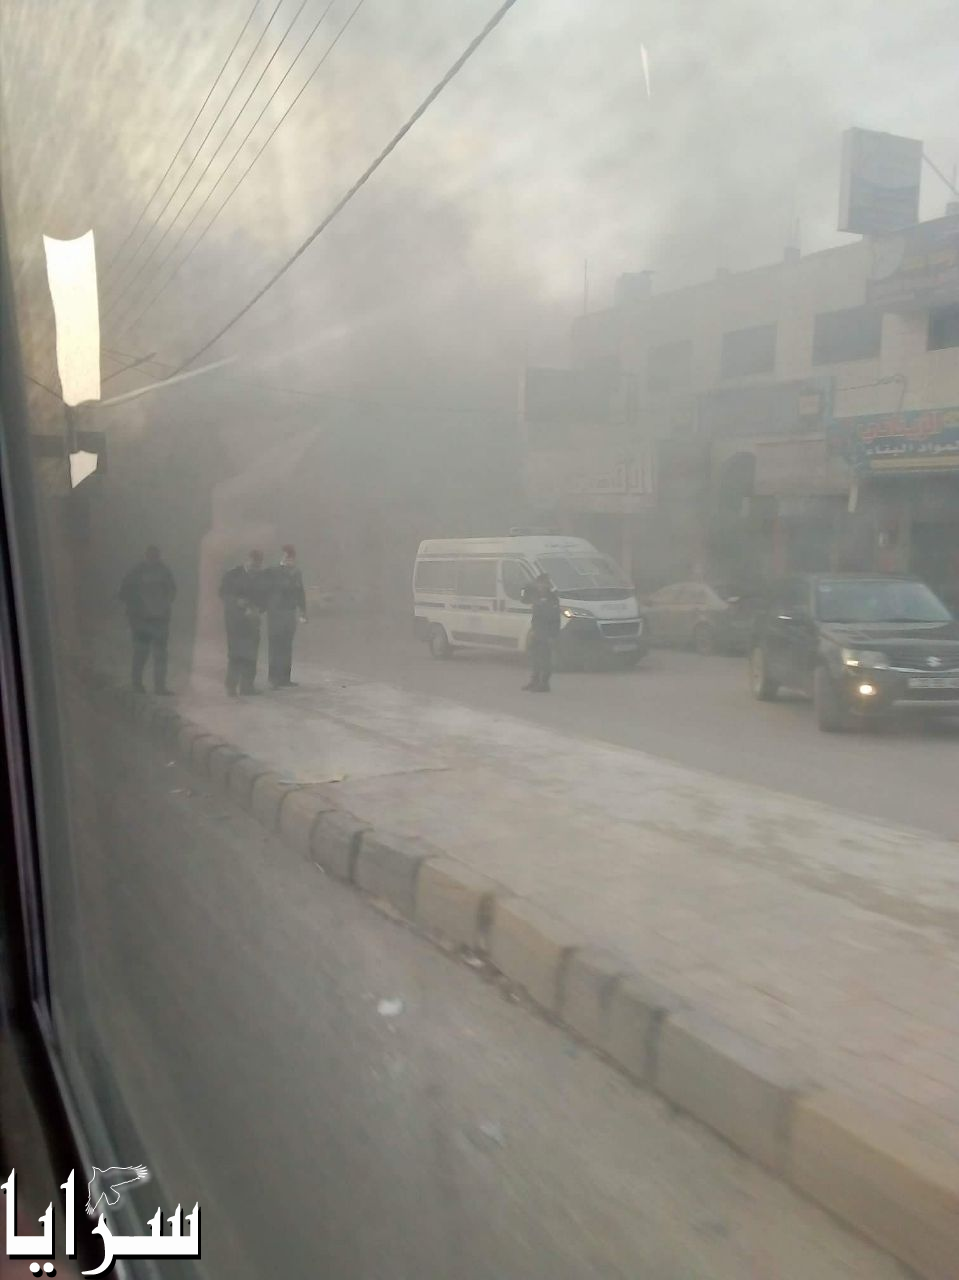 بالفيديو والصور   .. اربد: أعمال شغب من قبل أصحاب البسطات والأمن يستخدم الغاز المسيل للدموع